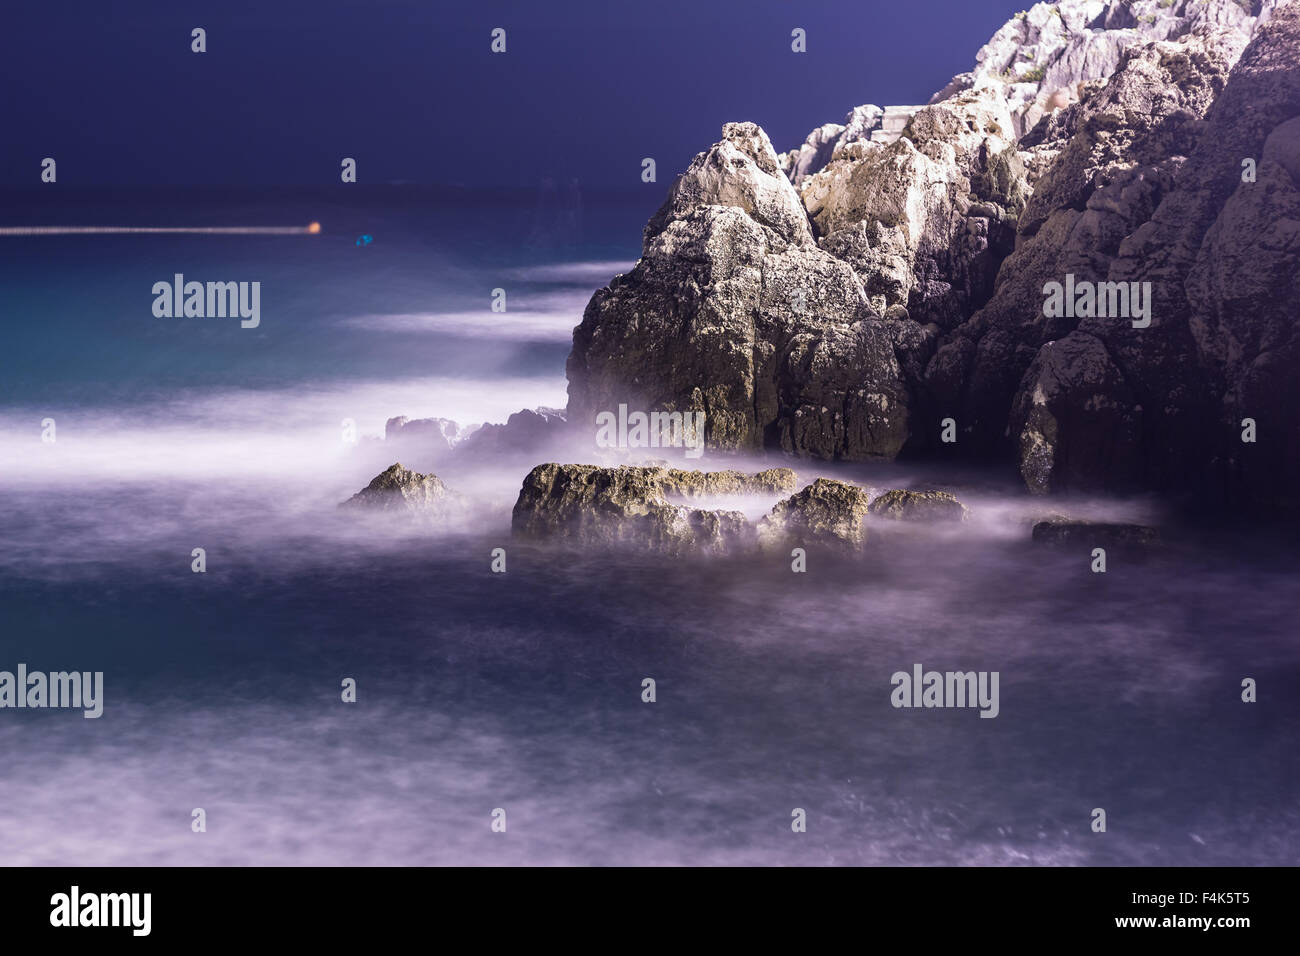 Las olas del mar línea de pestañas impacto rock en la playa de noche Foto de stock